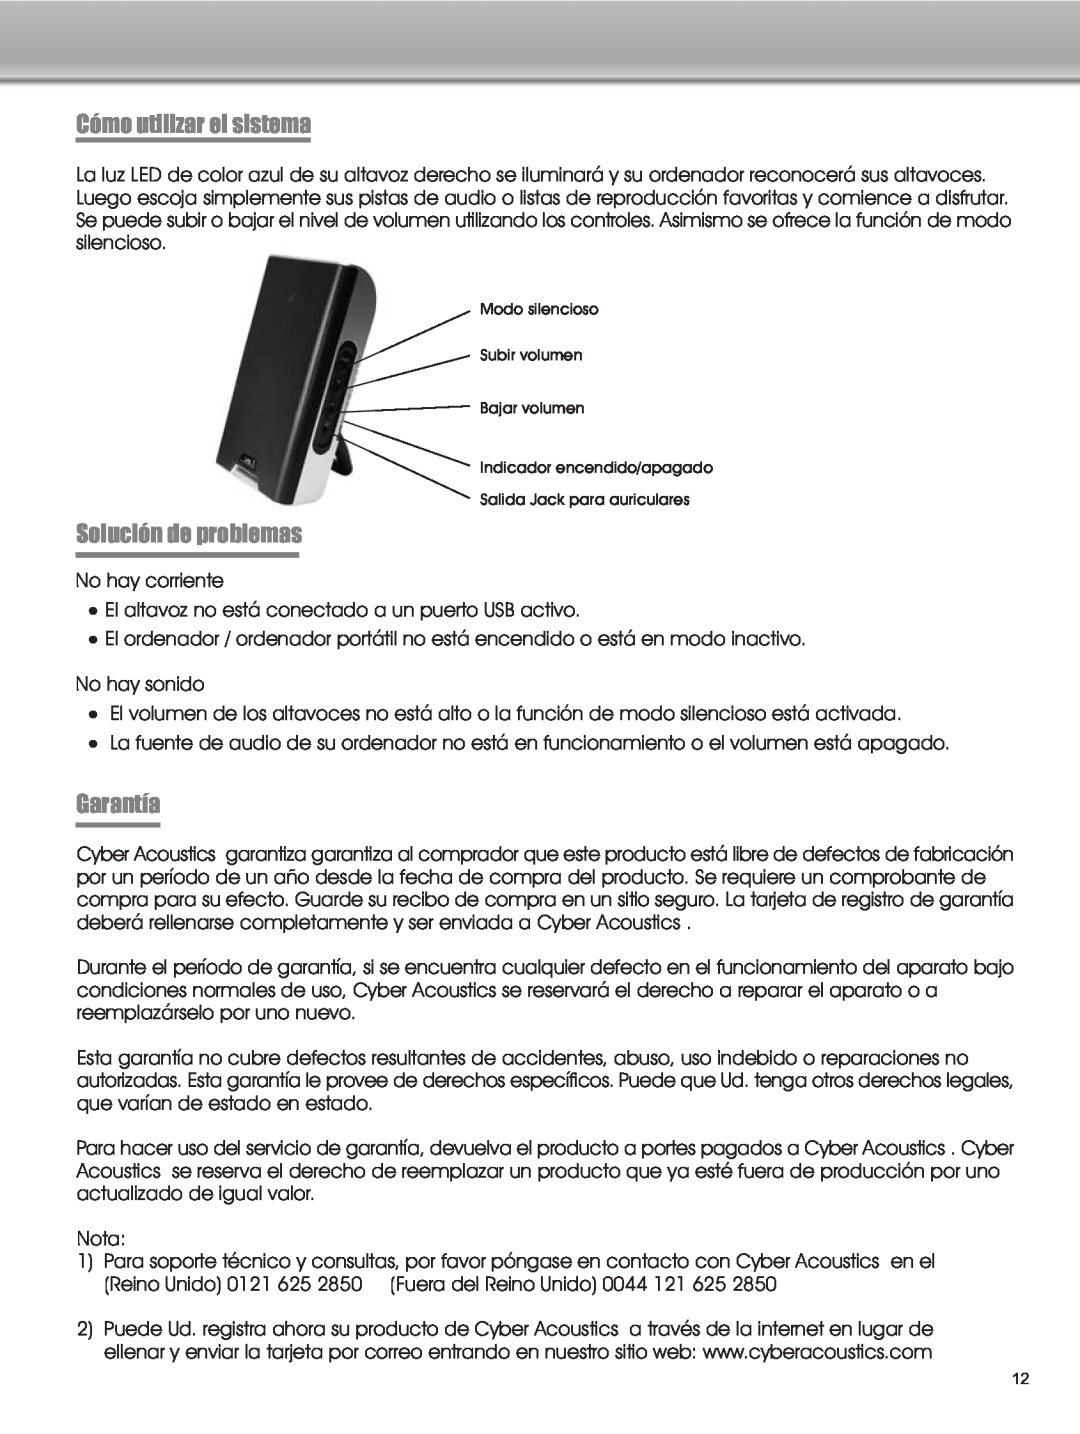 Cyber Acoustics CA-2908 manual Cómo utilizar el sistema, Solución de problemas, Garantía 